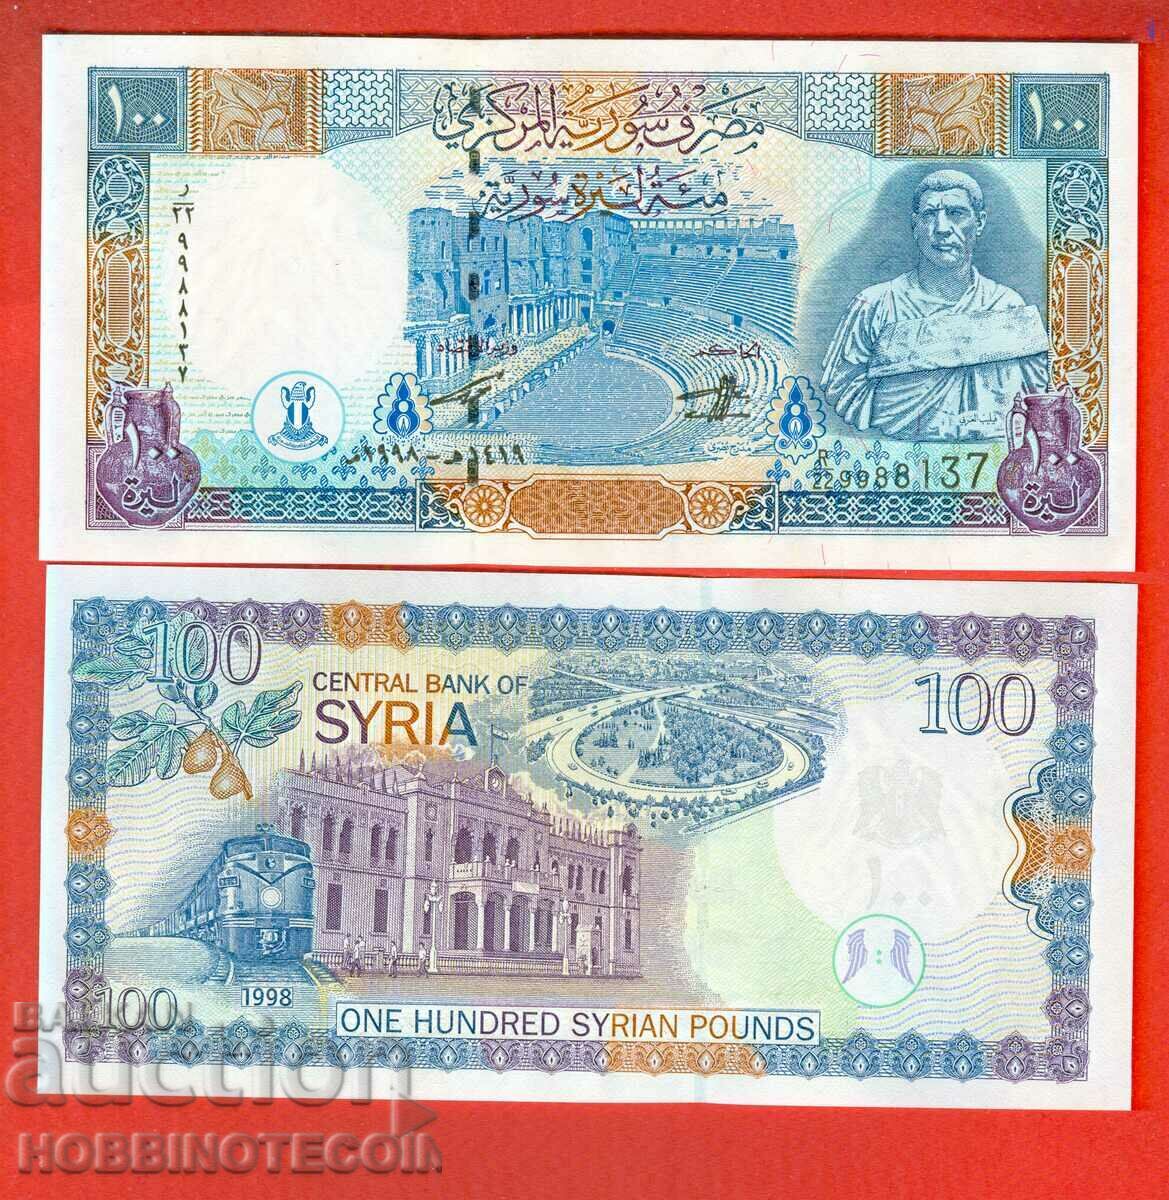 SYRIA SYRIA Emisiune de 100 de lire sterline - emisiune 1998 NOU UNC